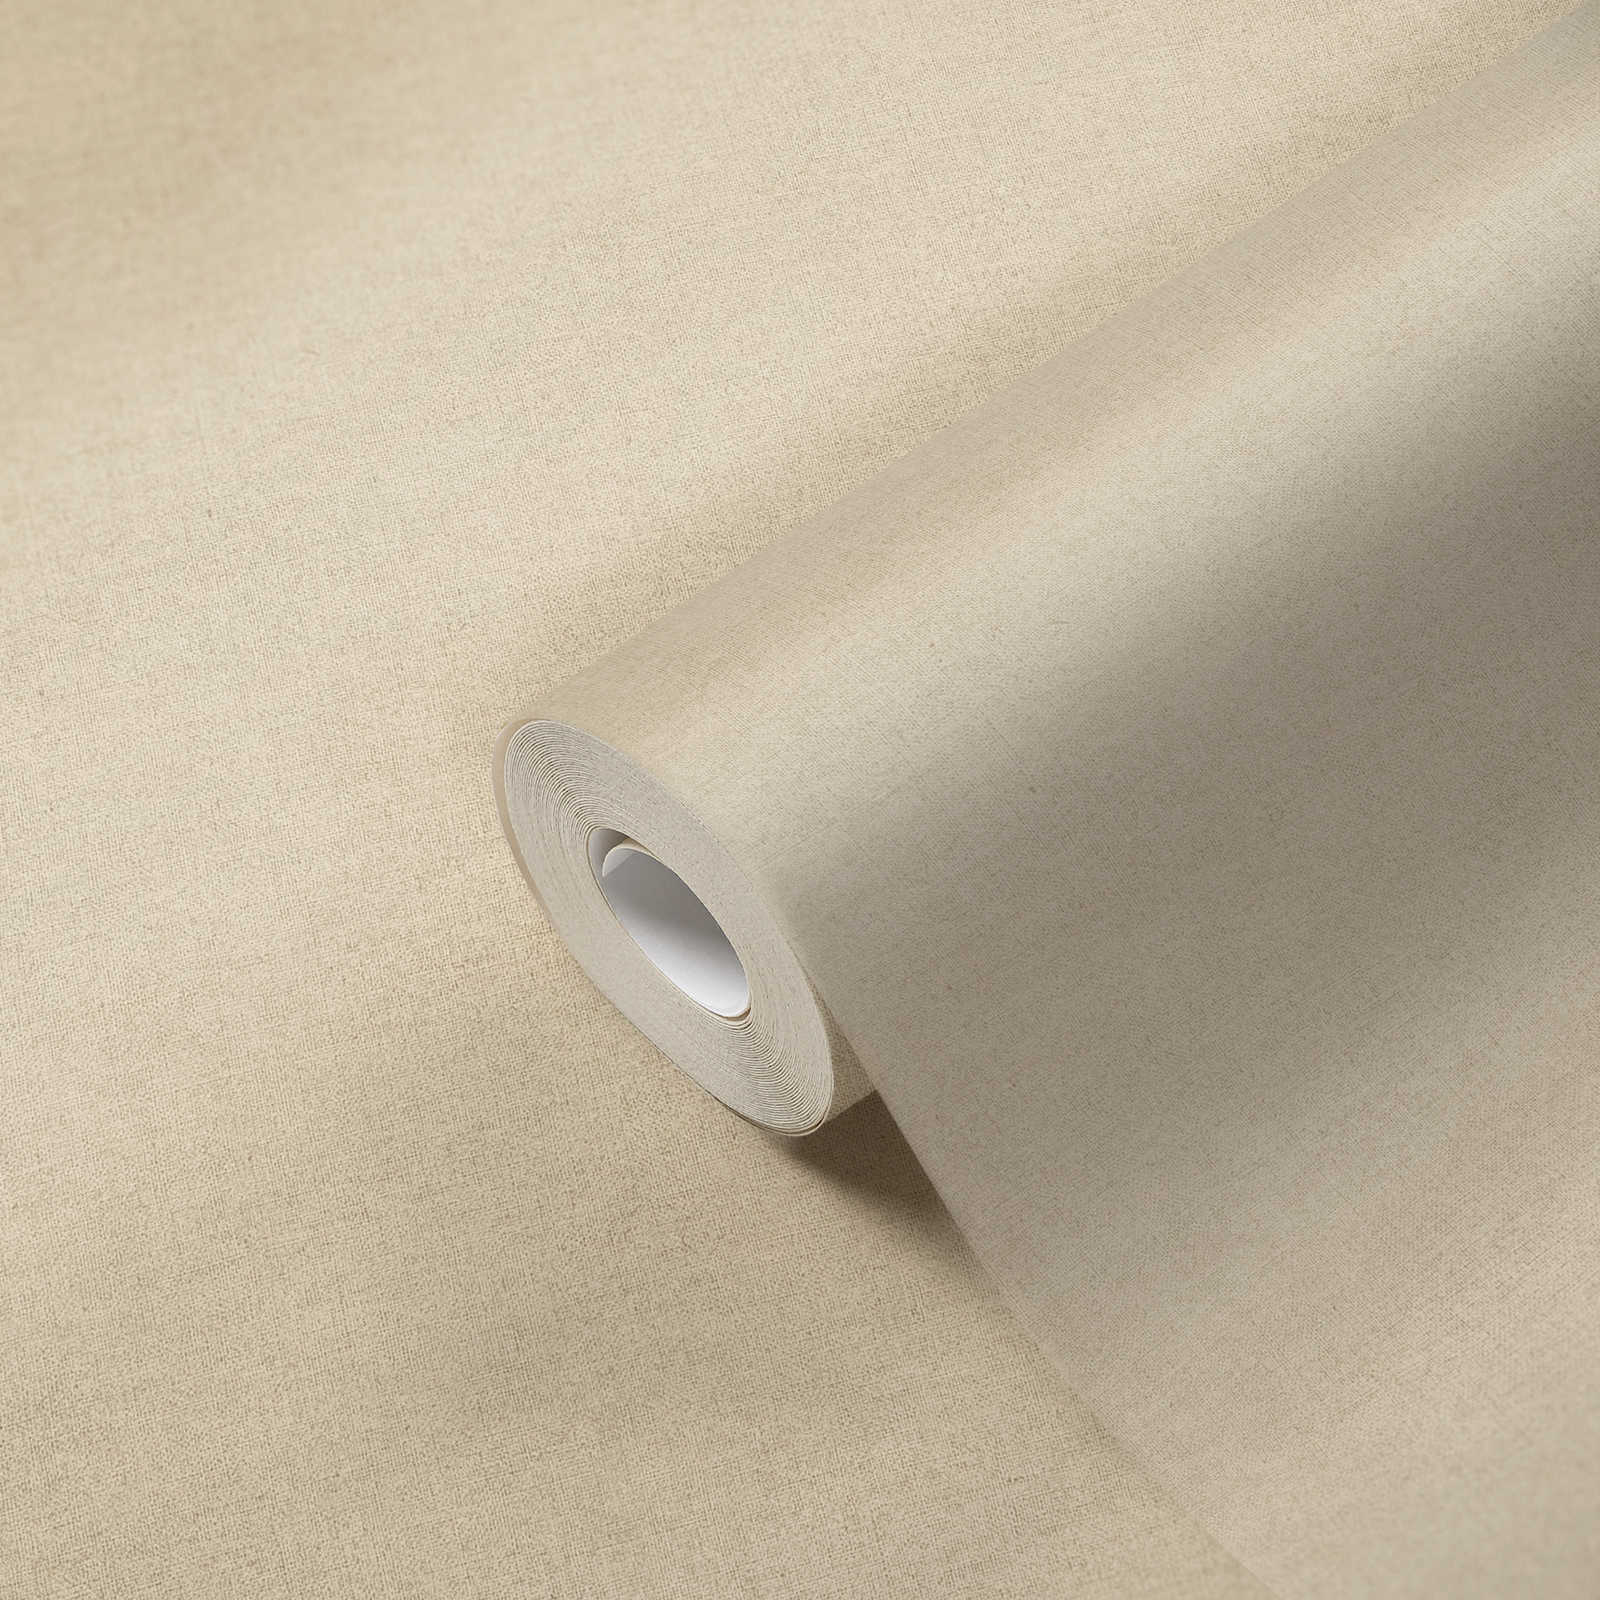             Papier peint couleur sable, mat avec motifs structurés
        